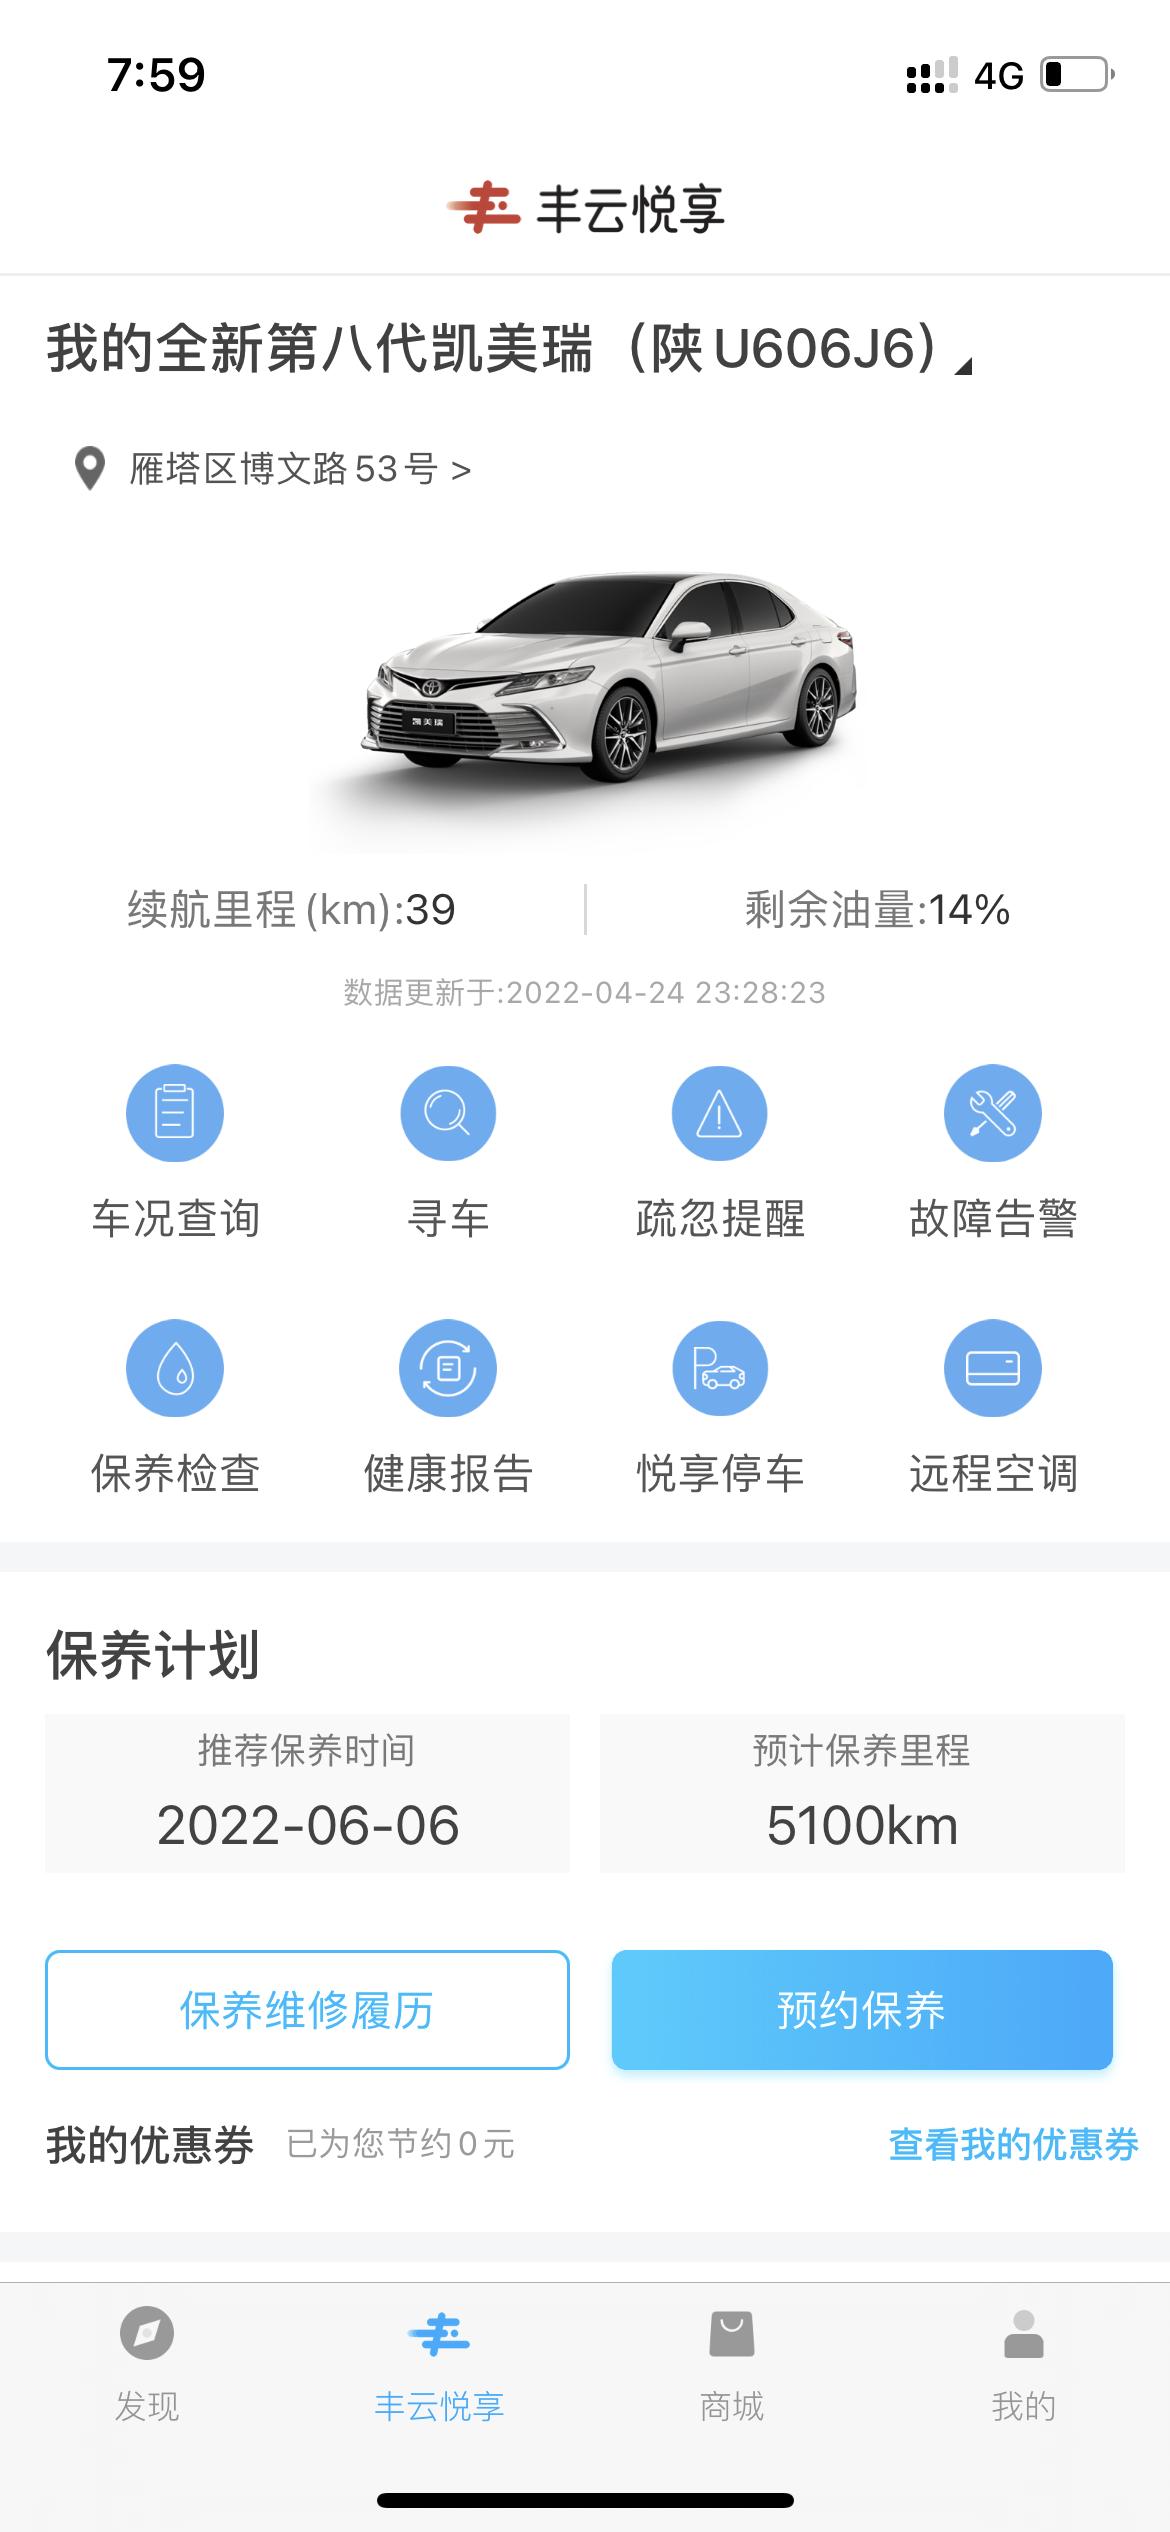 丰田凯美瑞 有人知道app显示0油量的时候还能跑多少么，有人试过么，百分14才只能跑39么